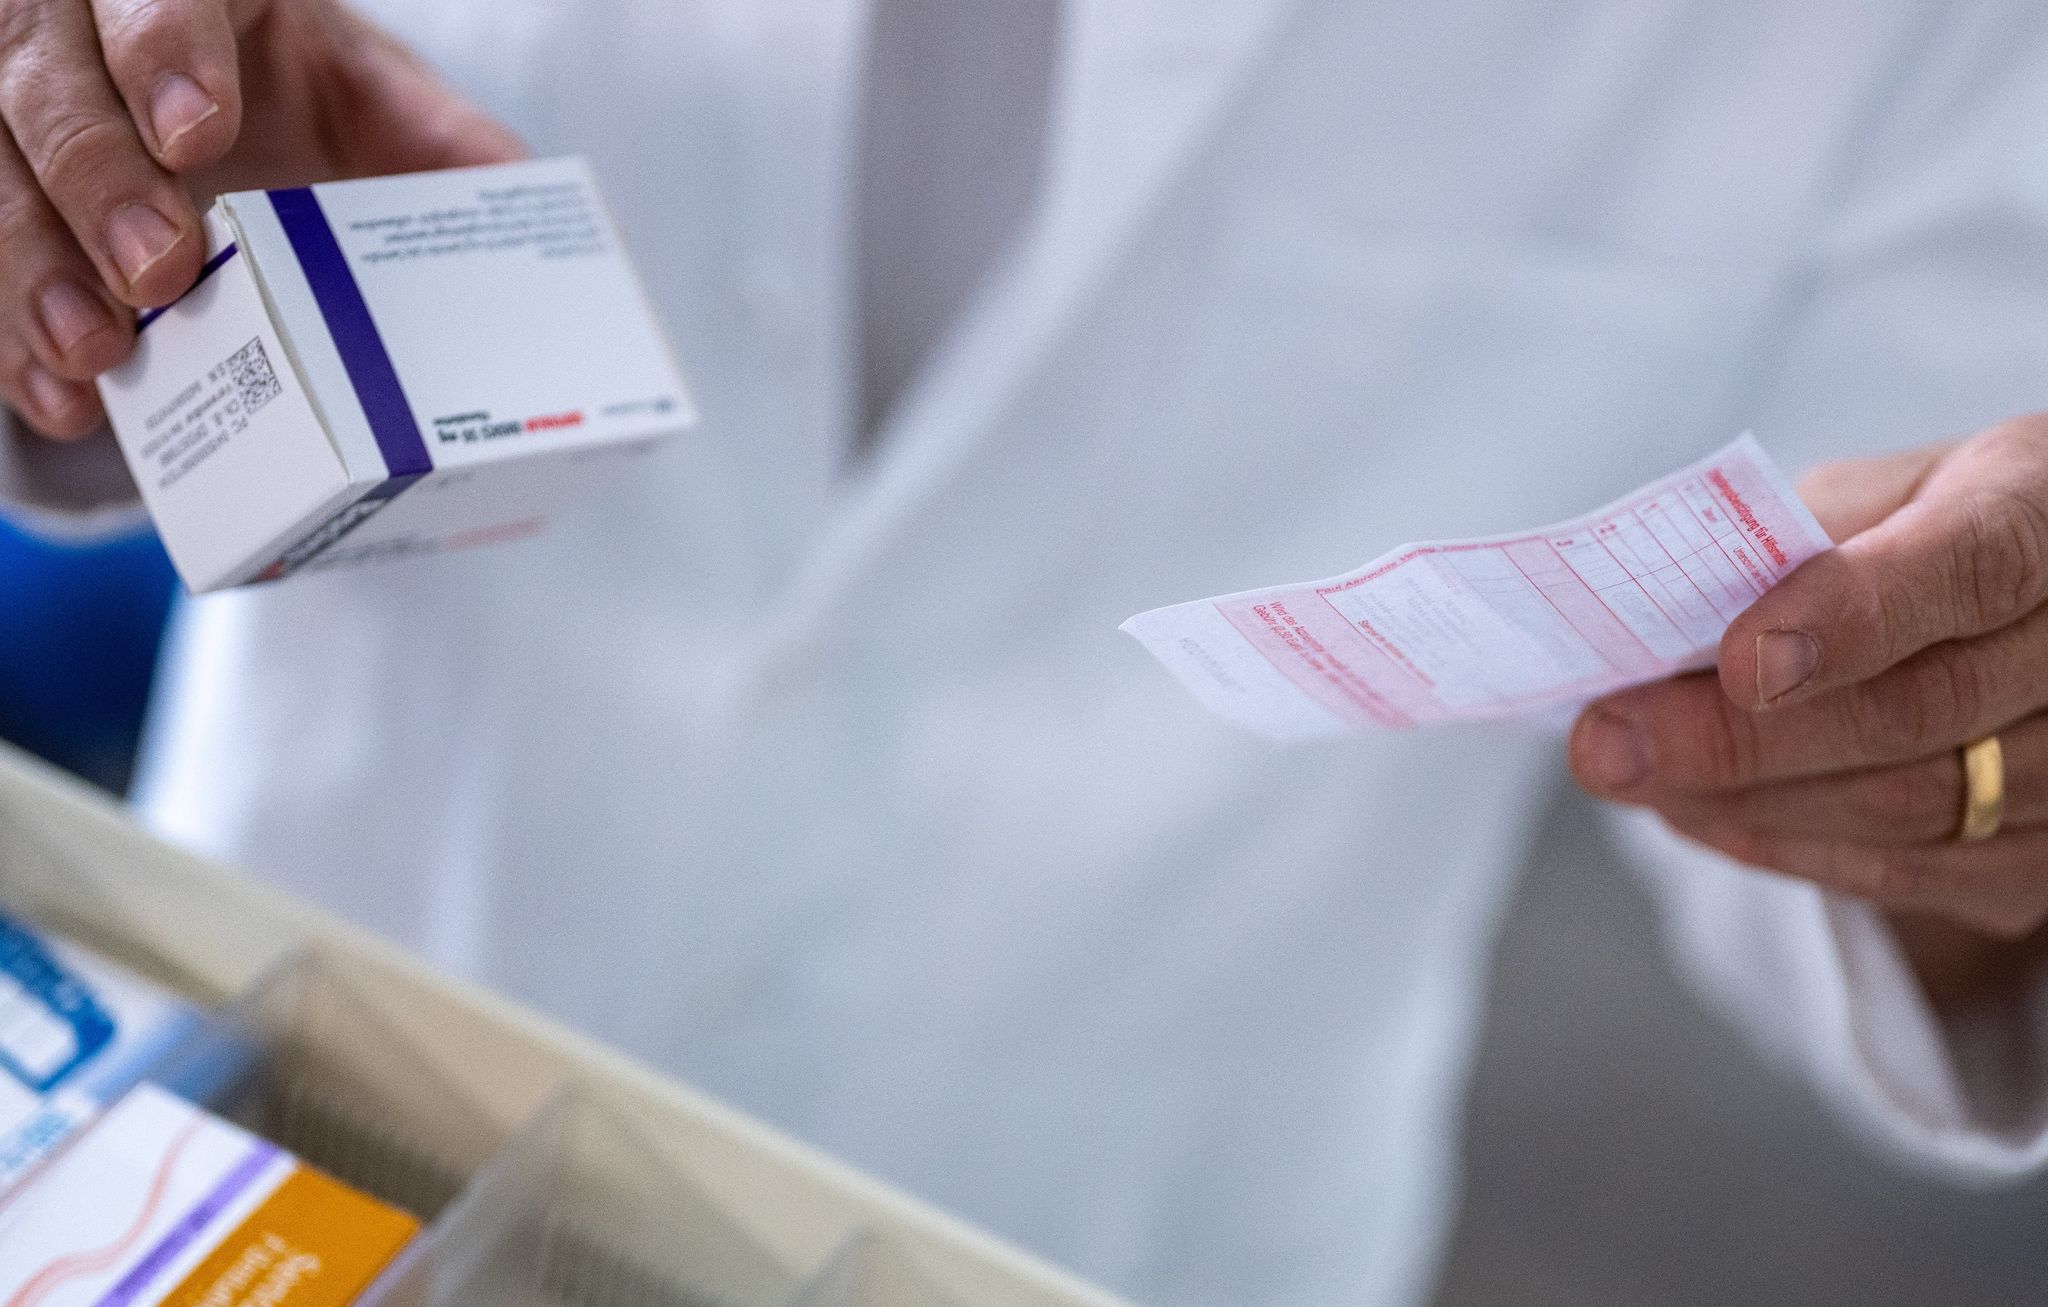 Ab Februar gibt es Erleichterungen bei der Zuzahlung von rezeptpflichtigen Medikamenten.